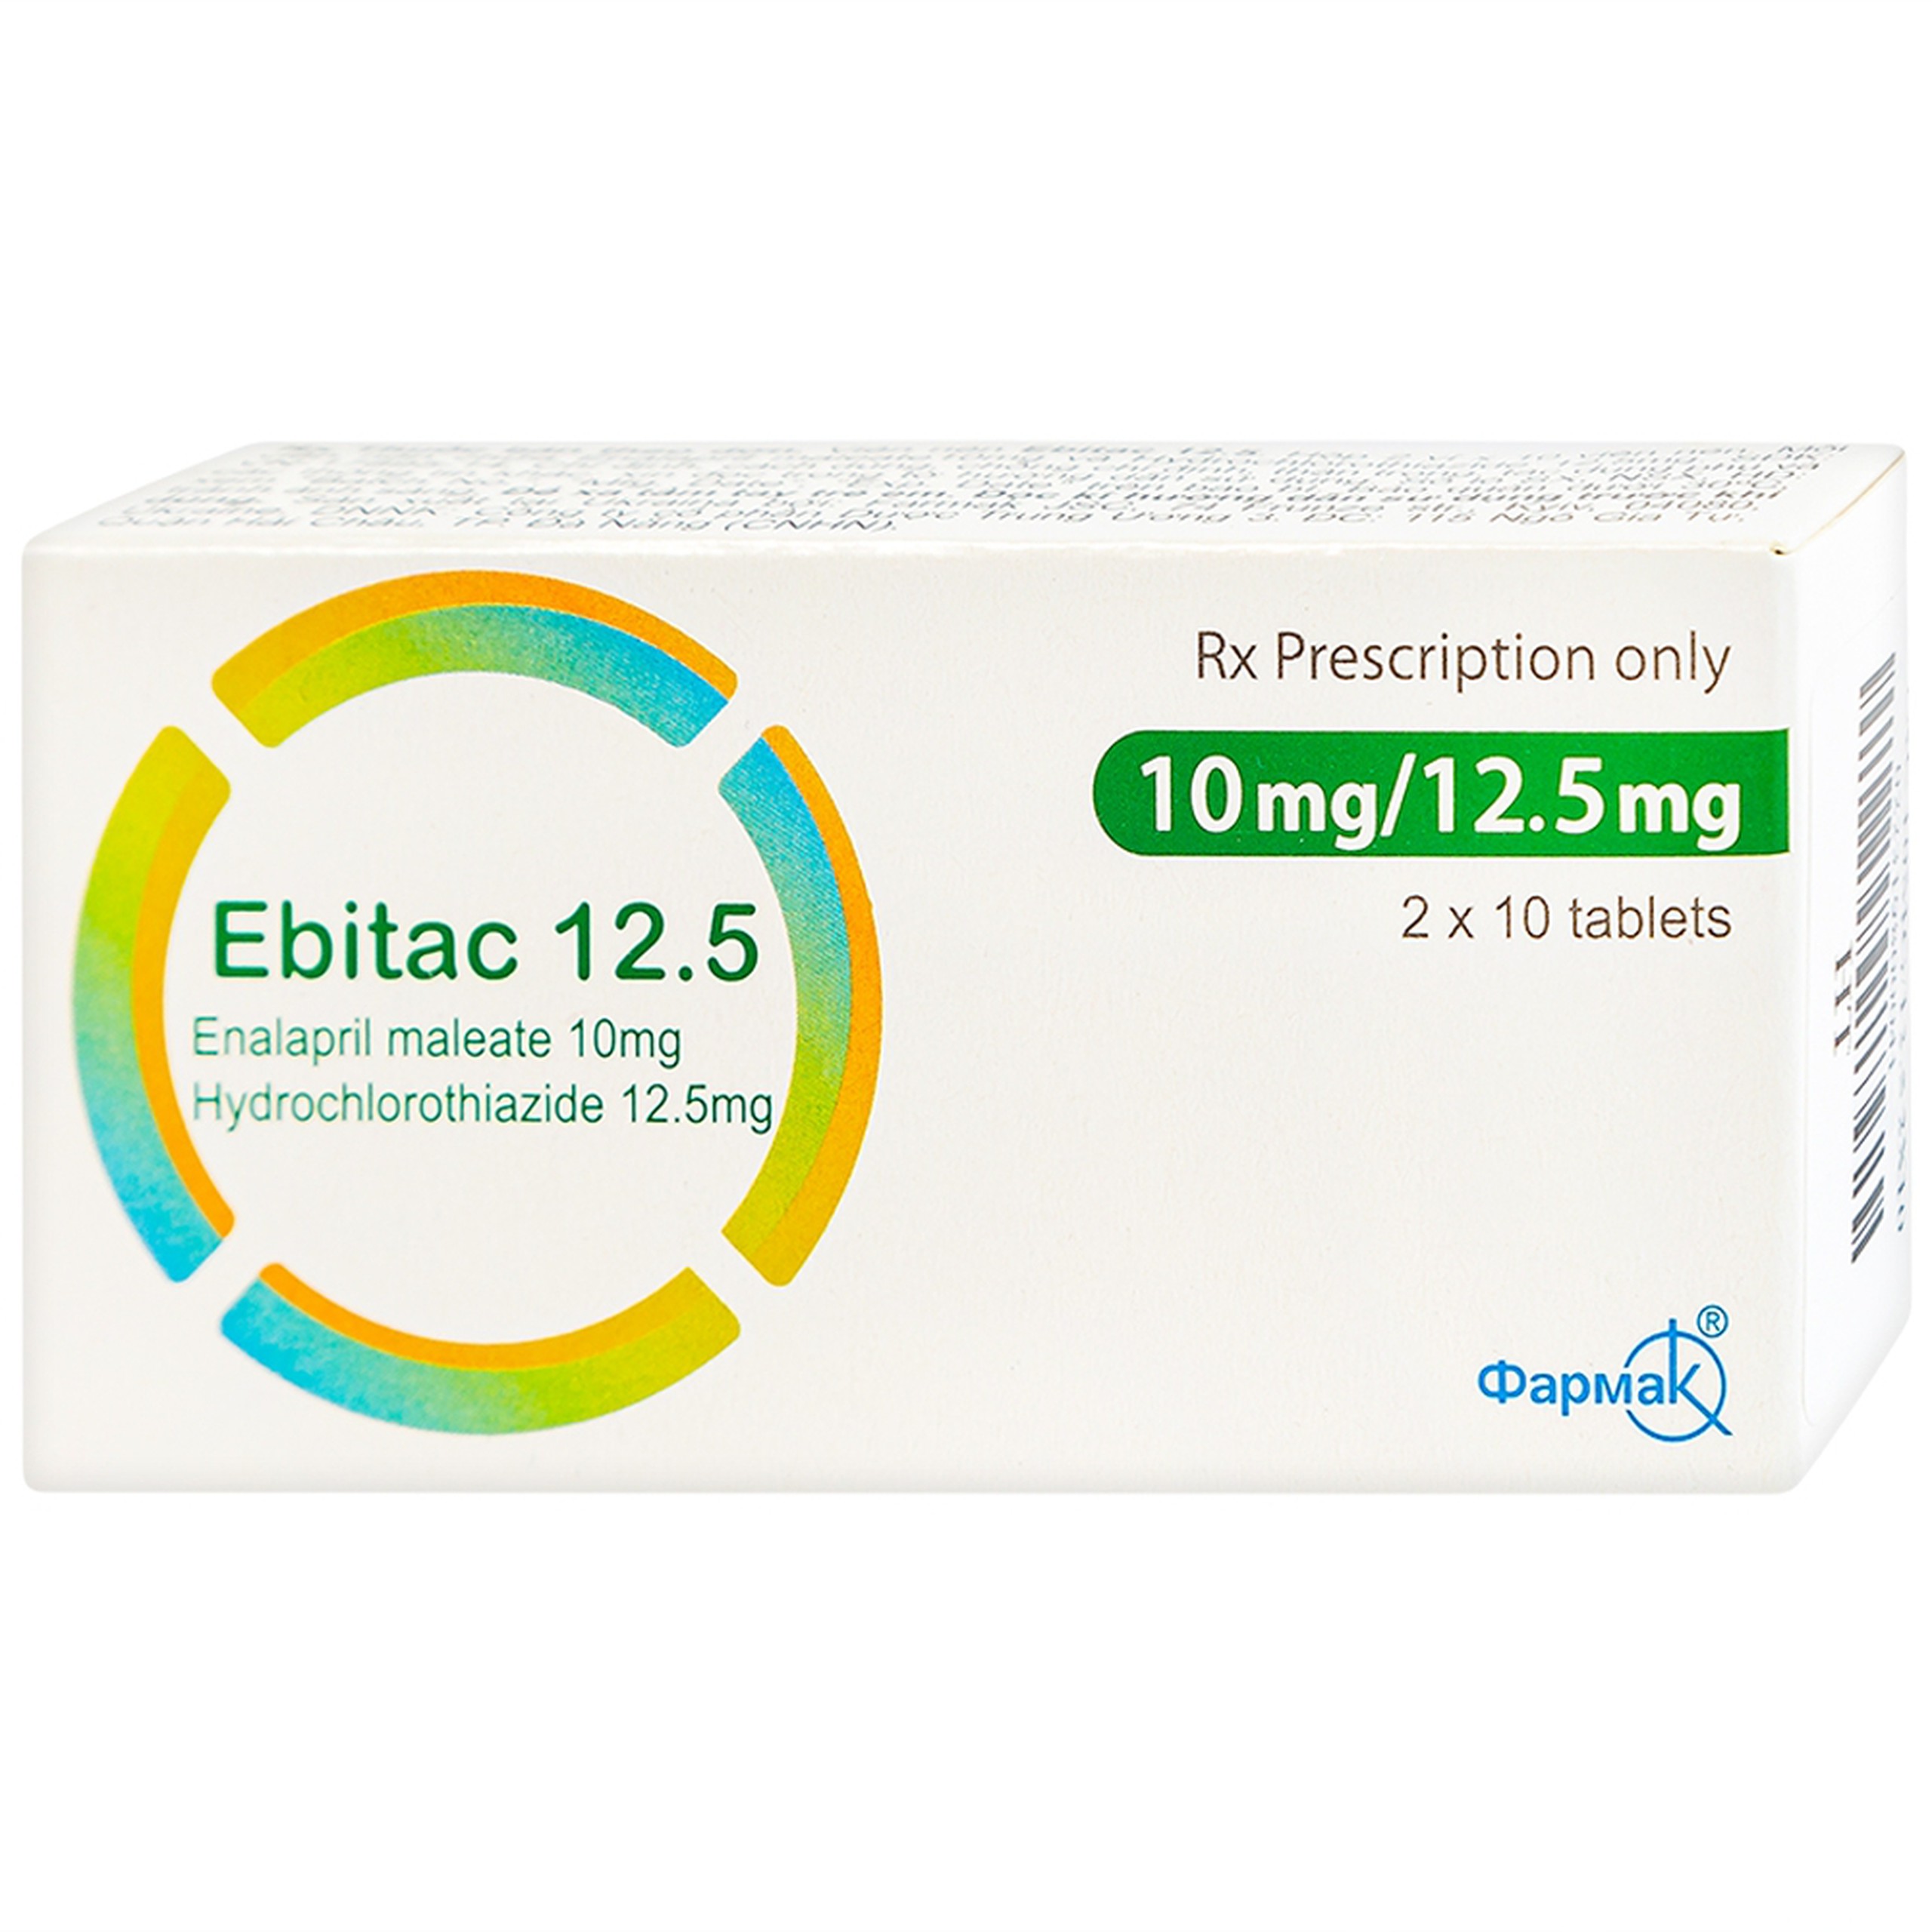 Thuốc Ebitac 12.5 Farkmak điều trị suy tim, tăng huyết áp (2 vỉ x 10 viên)